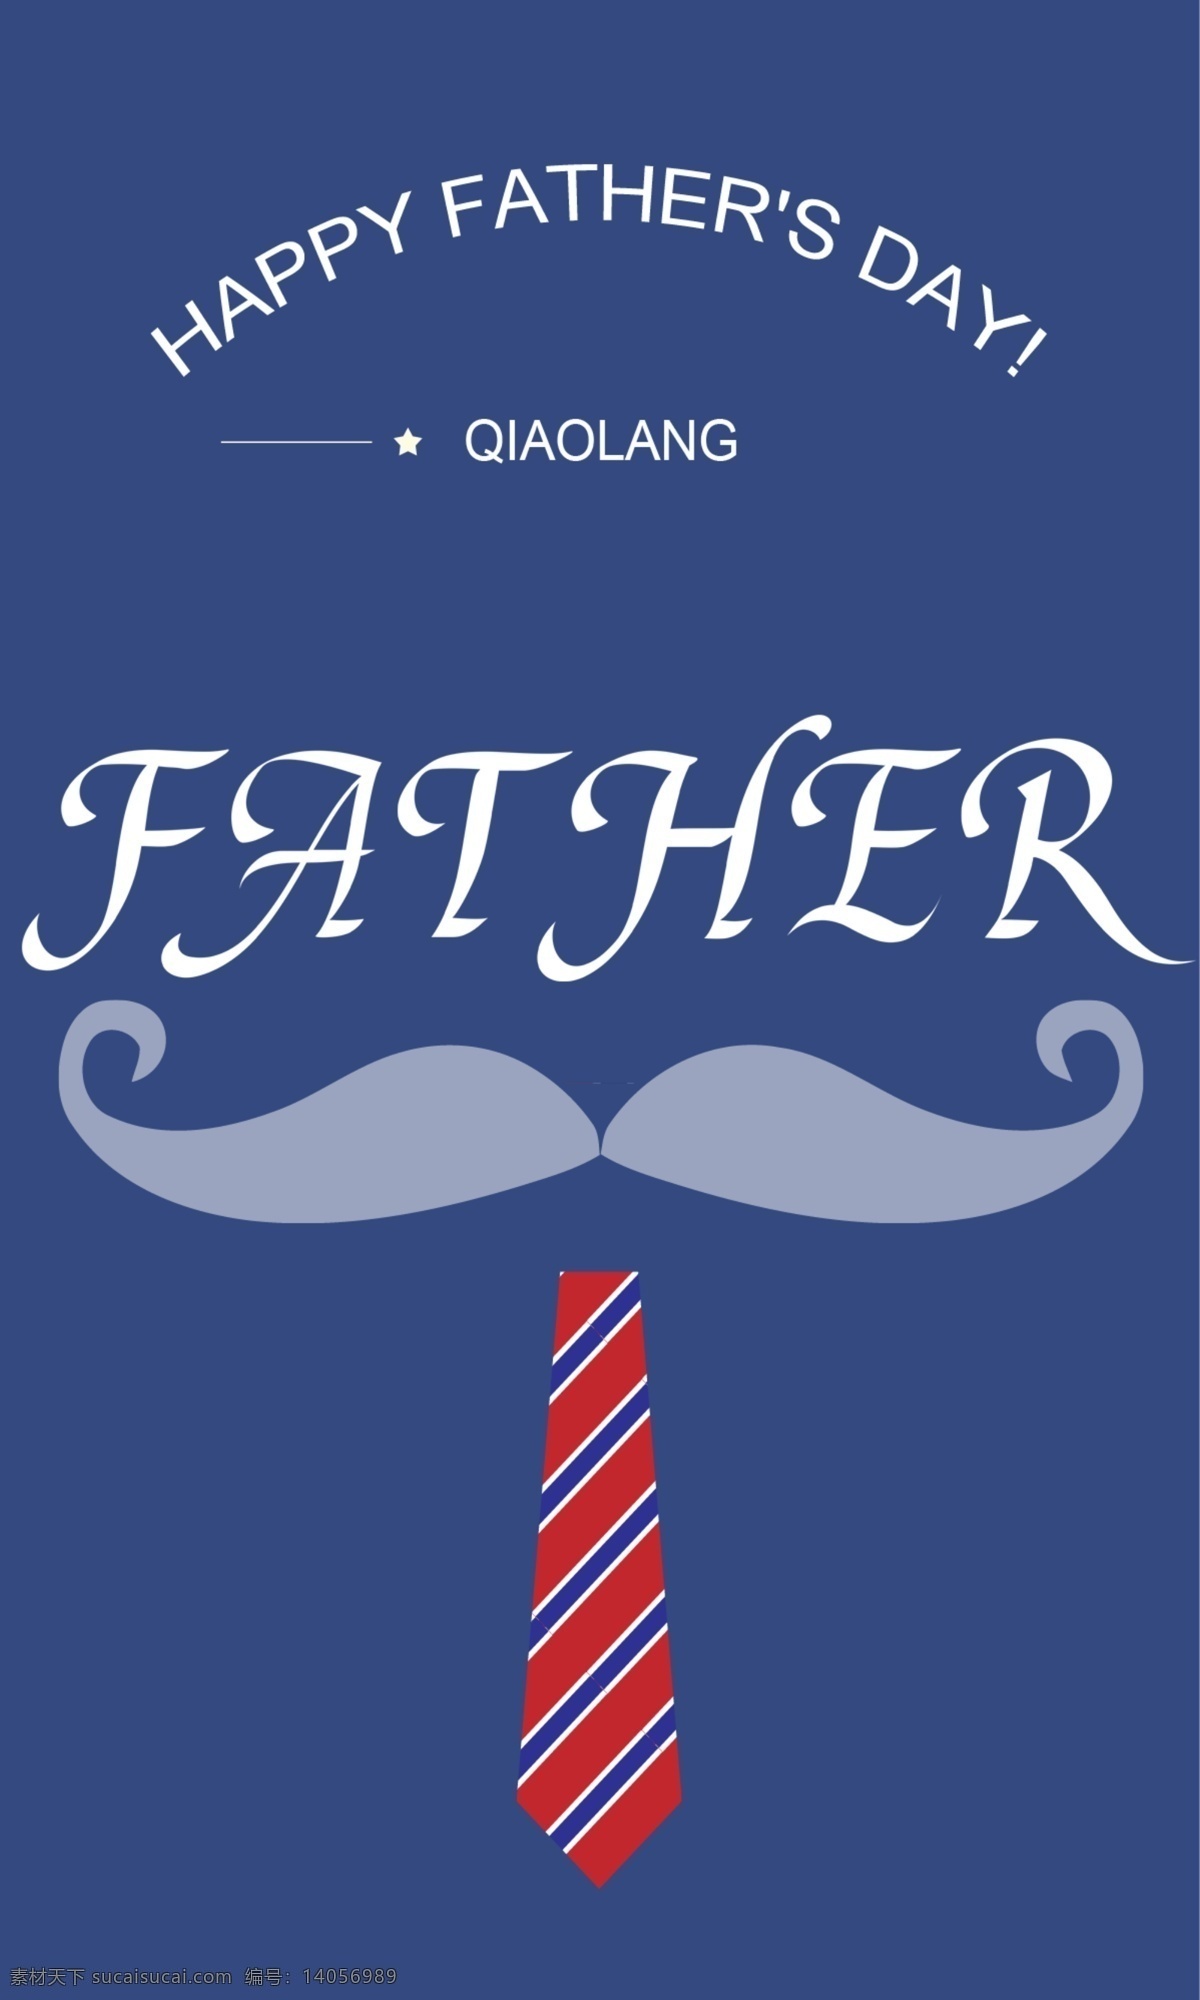 父亲节 领带 胡须 蓝色 背景 条纹 条纹领带 father 父亲节元素 蓝色背景